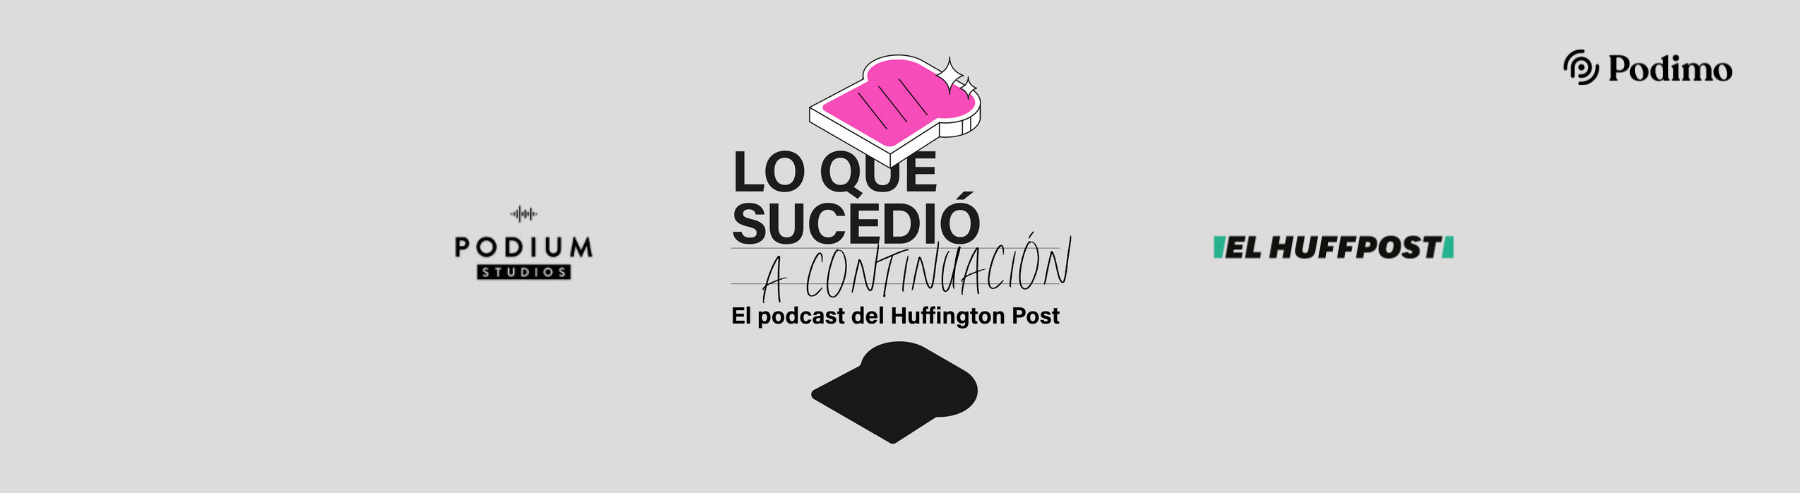 'Lo que sucedió a continuación' es un podcast de Podimo, el HuffPost y Podium Studios